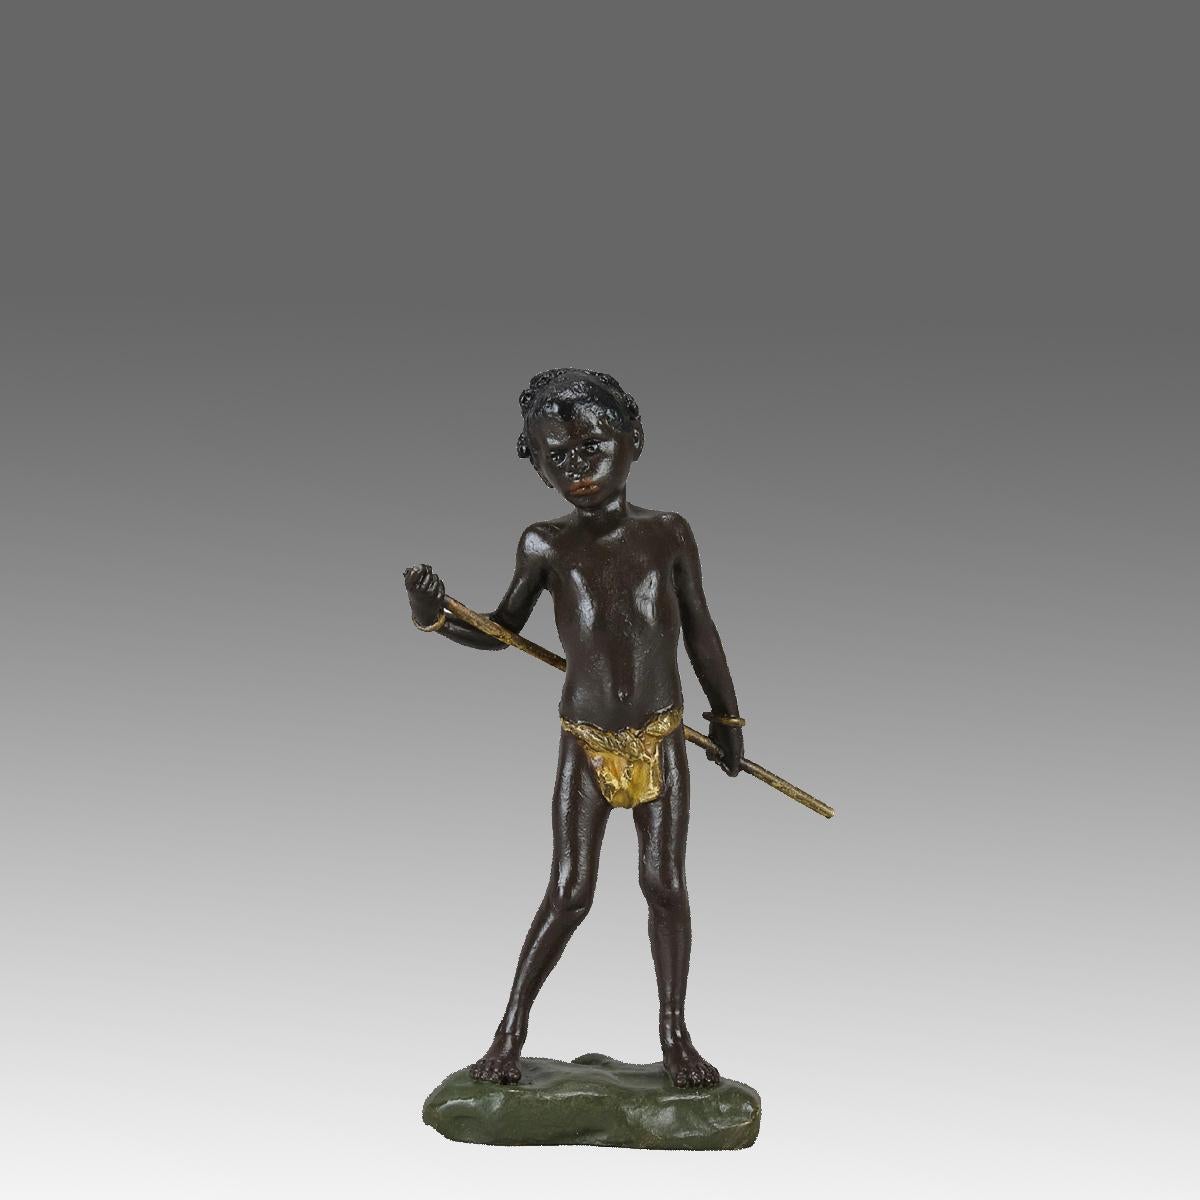 Vif bronze autrichien du début du 20e siècle peint à froid représentant un jeune garçon arabe tenant un bâton derrière son dos, avec de très beaux détails de surface ciselés à la main et de belles couleurs naturalistes, signé avec le 